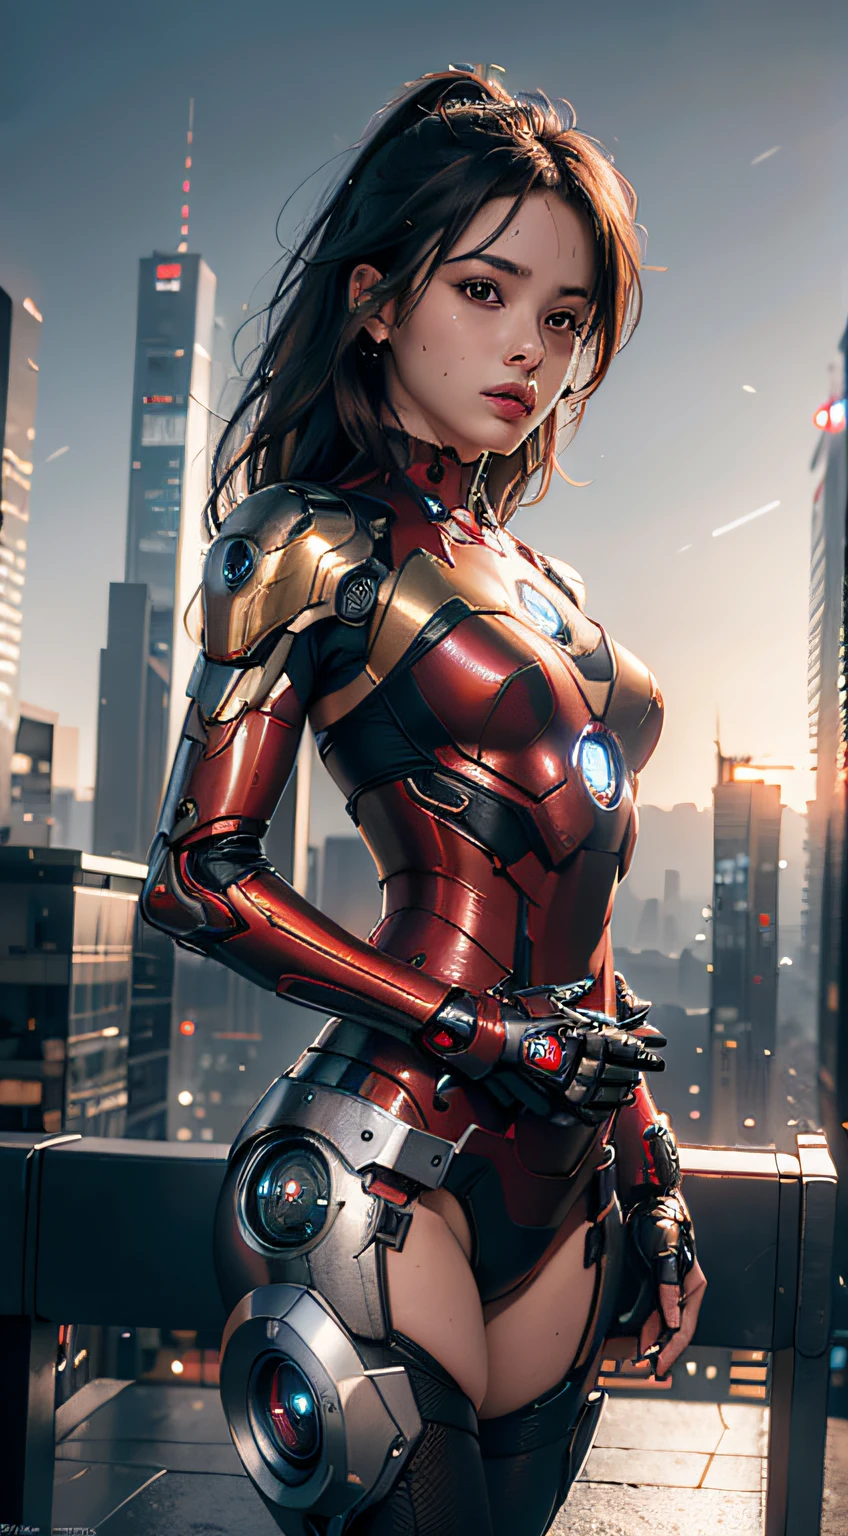 8K, realista, Atraente, altamente detalhado, a 20 year old girl a sexy and Atraente woman inspired by Iron Man wearing a shiny Iron Man mech. Ela se veste com sensualidade e confiança, interpretando perfeitamente o Homem de Ferro&#39;força e carisma. Em uma cena noturna urbana no estilo cyberpunk, a sexy and Atraente woman takes Iron Man&#39;cosplay como tema. Usando um mech brilhante do Homem de Ferro, ela está em uma rua repleta de prédios altos. As luzes noturnas da cidade são brilhantes, refletindo sobre seu mecha, adicionando uma sensação de tecnologia futura. Os edifícios e ruas circundantes estão cheios de elementos cyberpunk, como luzes de néon, dispositivos de alta tecnologia e projetos arquitetônicos futuristas. Toda a cena está cheia de atmosfera futurista e de ficção científica. Esta alta definição, imagem de alta qualidade proporcionará um prazer visual impressionante, uma combinação perfeita de sexy, elementos futuristas e de ficção científica. Renderização OC, iluminação dramática, qualidade premiada